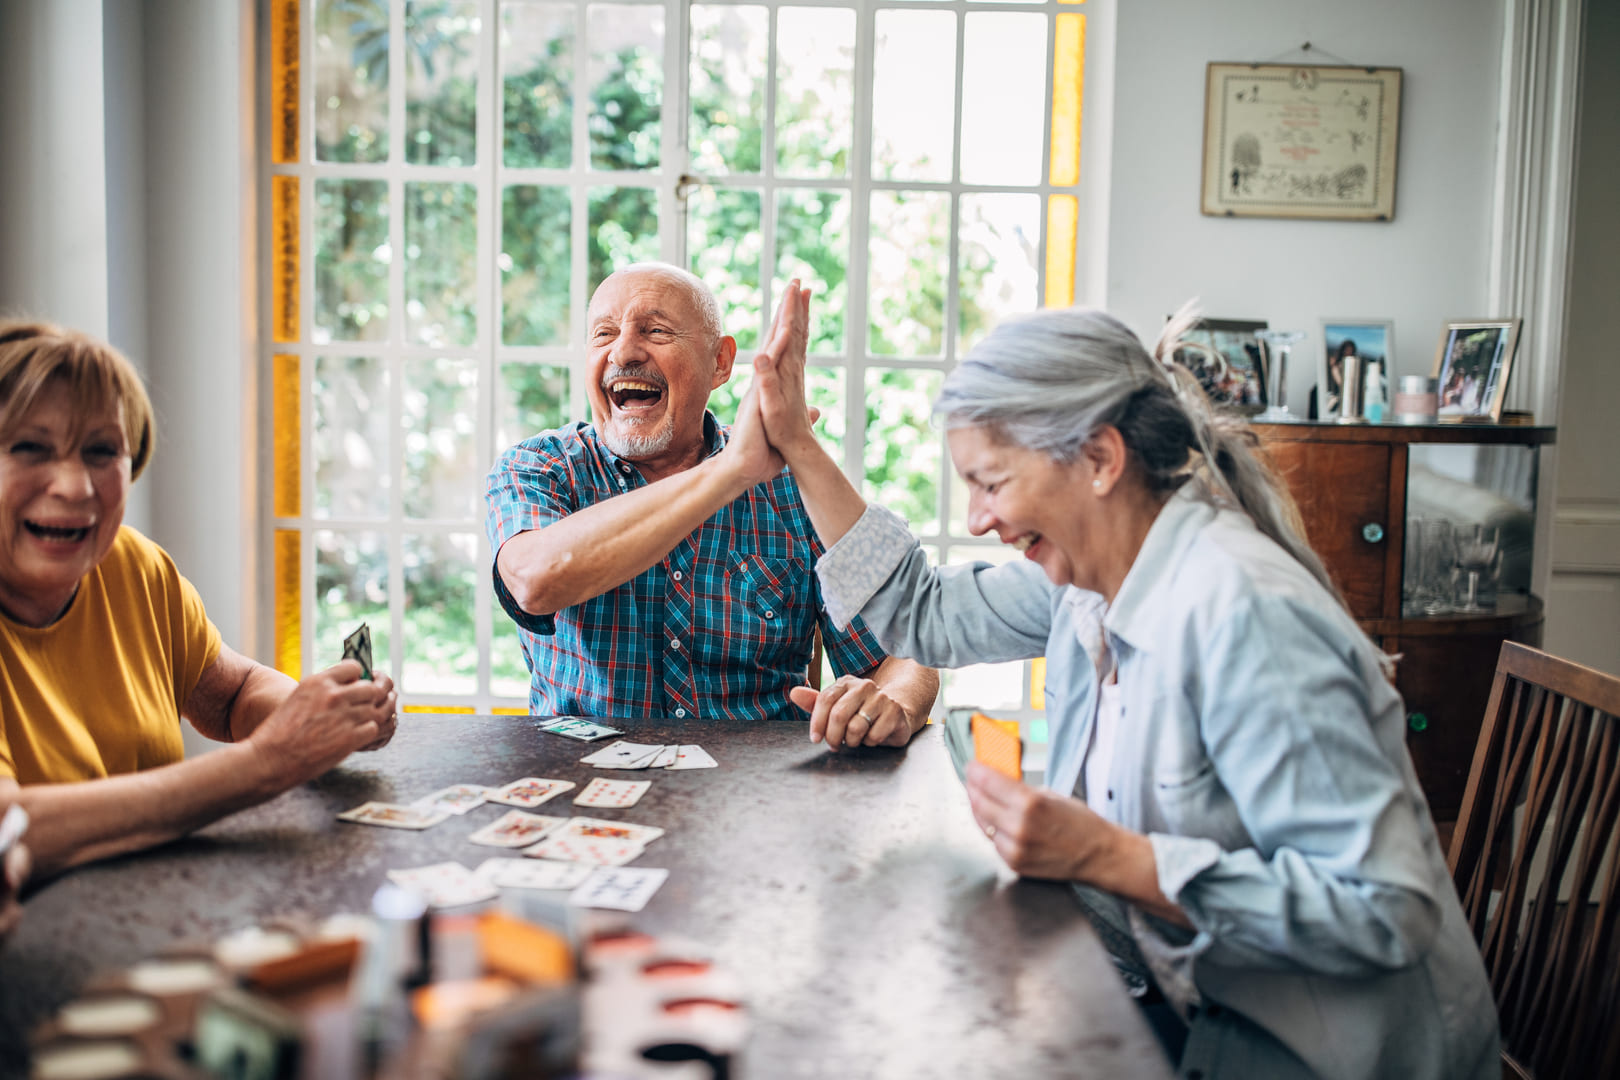 Kartenspielrunde - Altenheime Apel betreiben 5 Einrichtungen für Altenpflege & Seniorenbetreuung in Geesthacht, nähe Hamburg